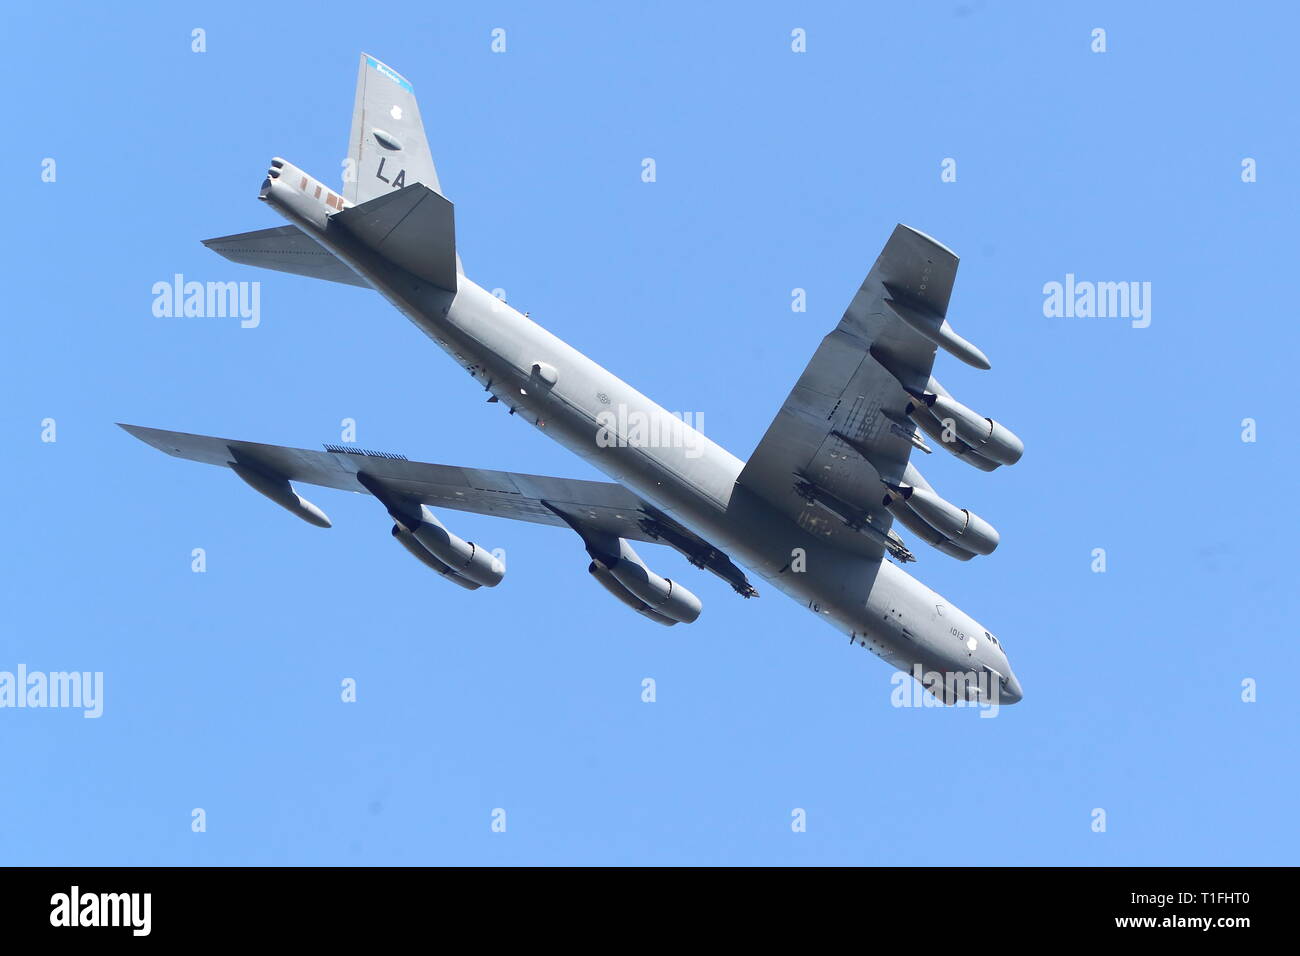 L'US Air Force un Boeing B-52 bombardiers stratégiques provenant d'un exercice militaire à RAF Fairford, UK Banque D'Images